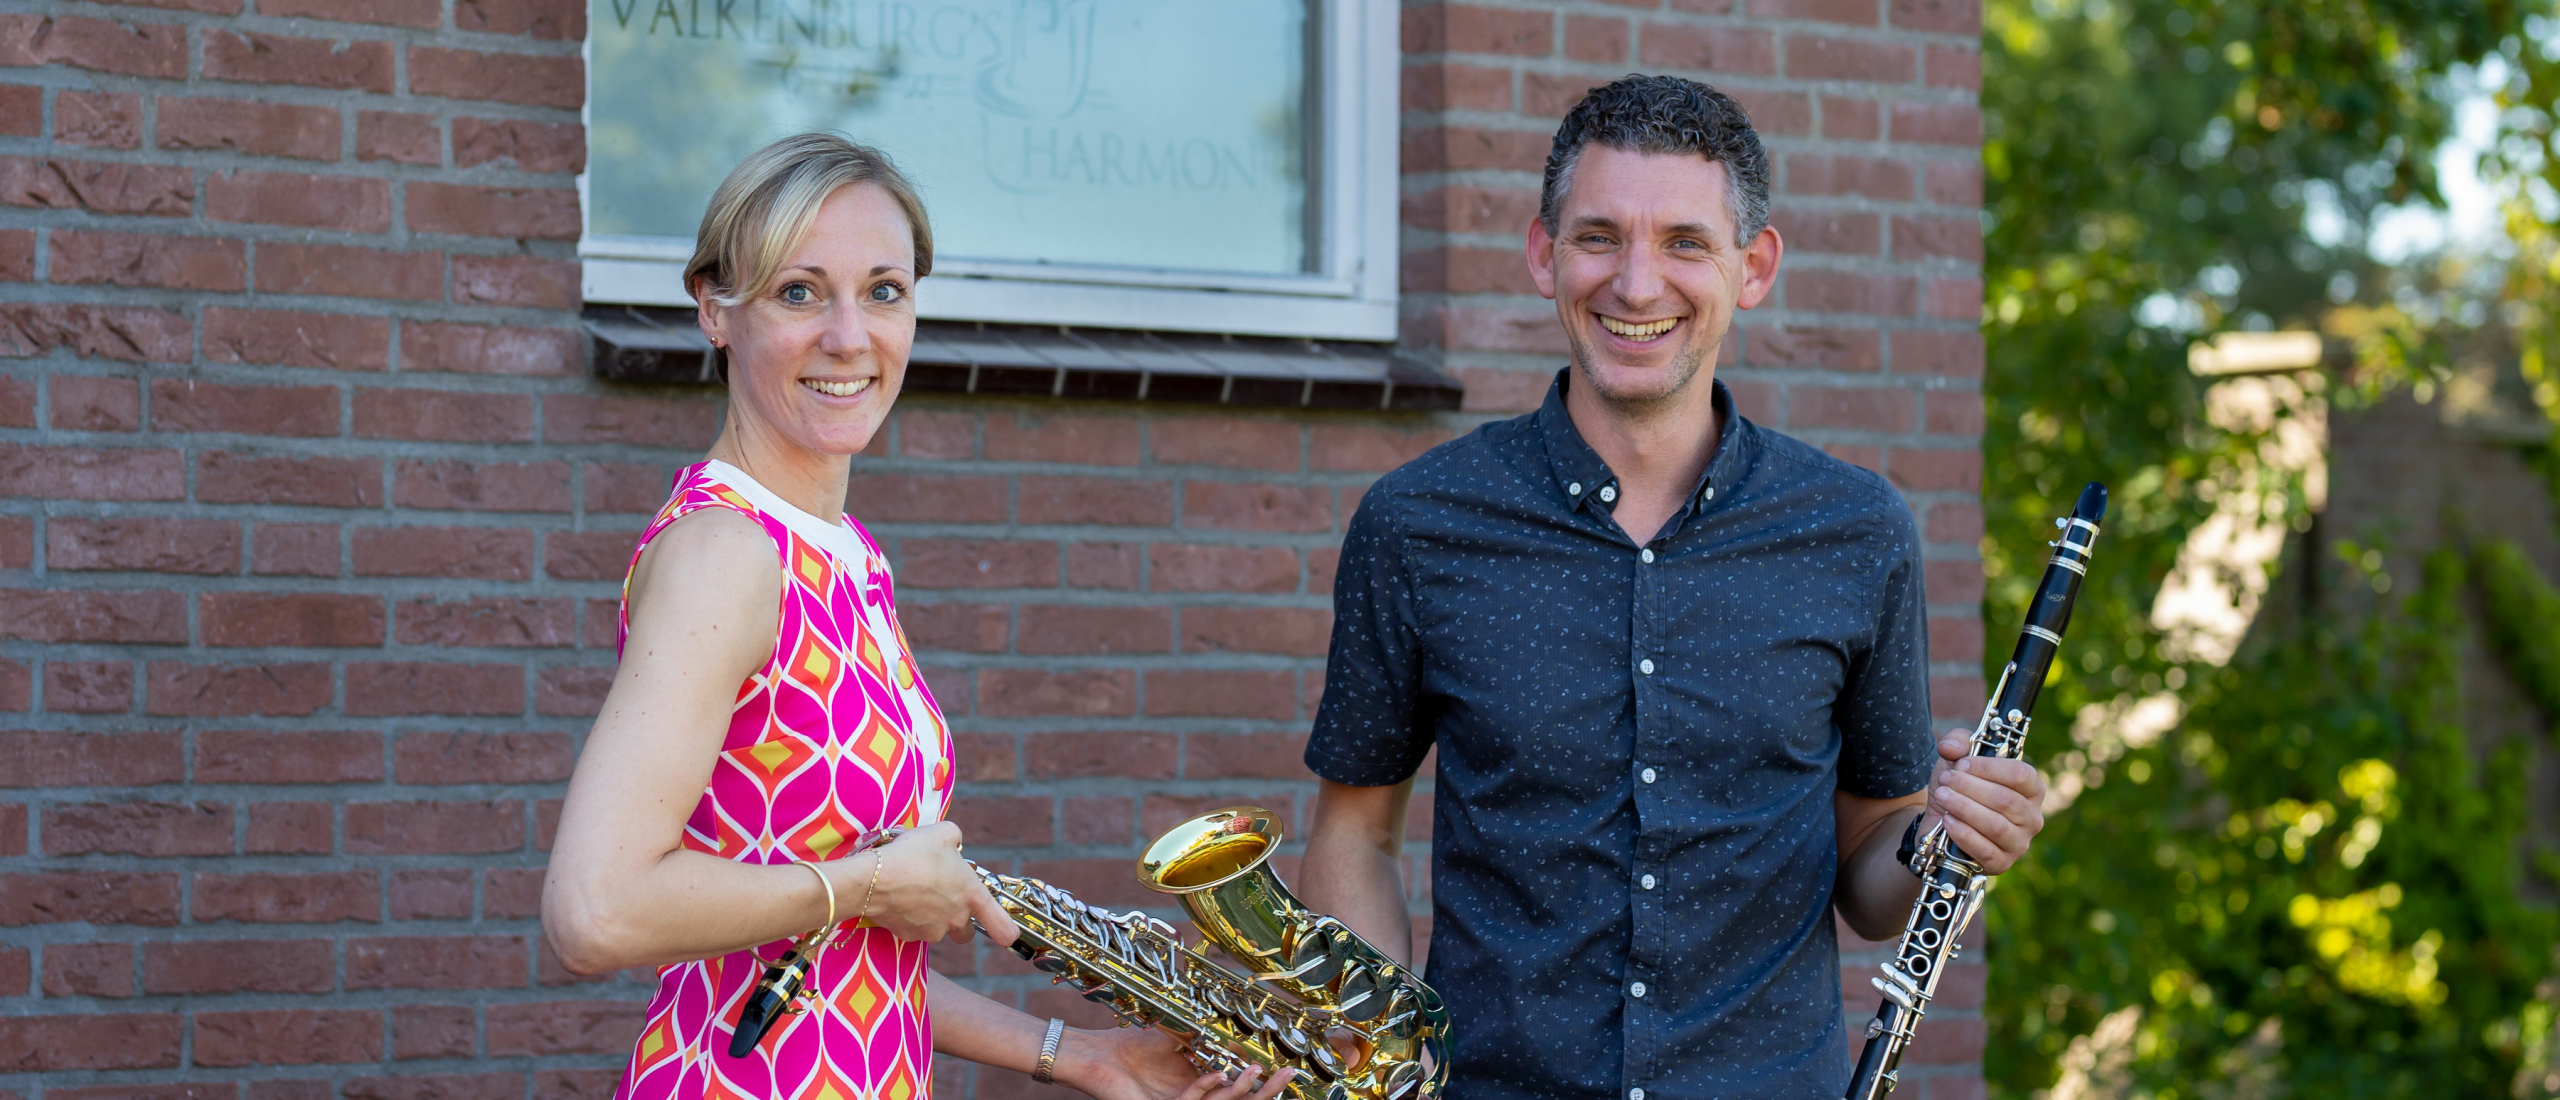 Valkenburg’s Harmonie start samenwerking met Muziekschool Katwijk